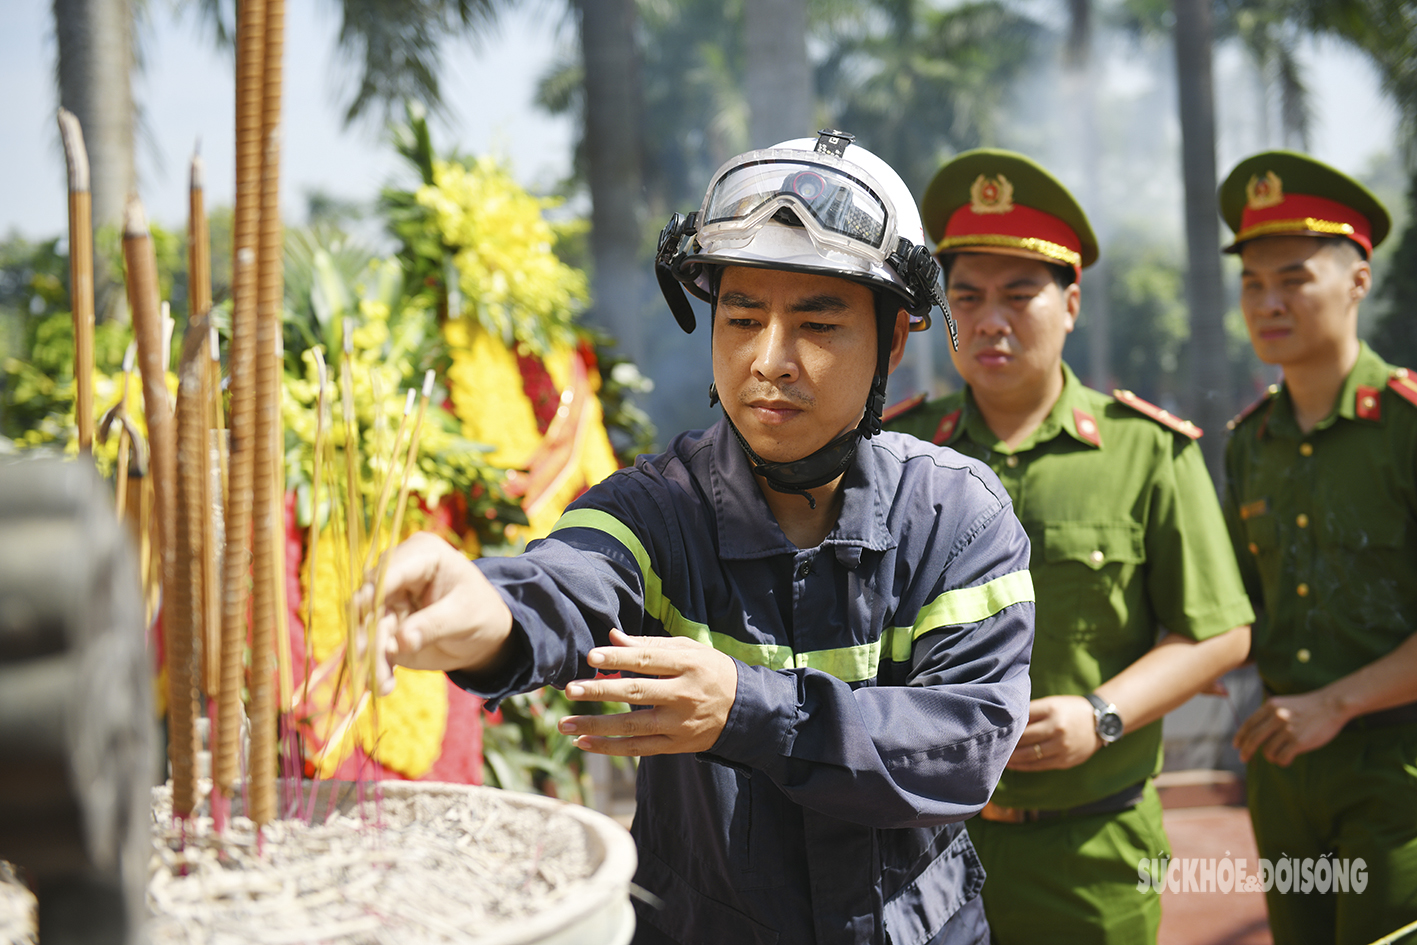 Xúc động hình ảnh các chiến sĩ PCCC thắp hương tri ân tại nghĩa trang Hà Nội - Ảnh 2.